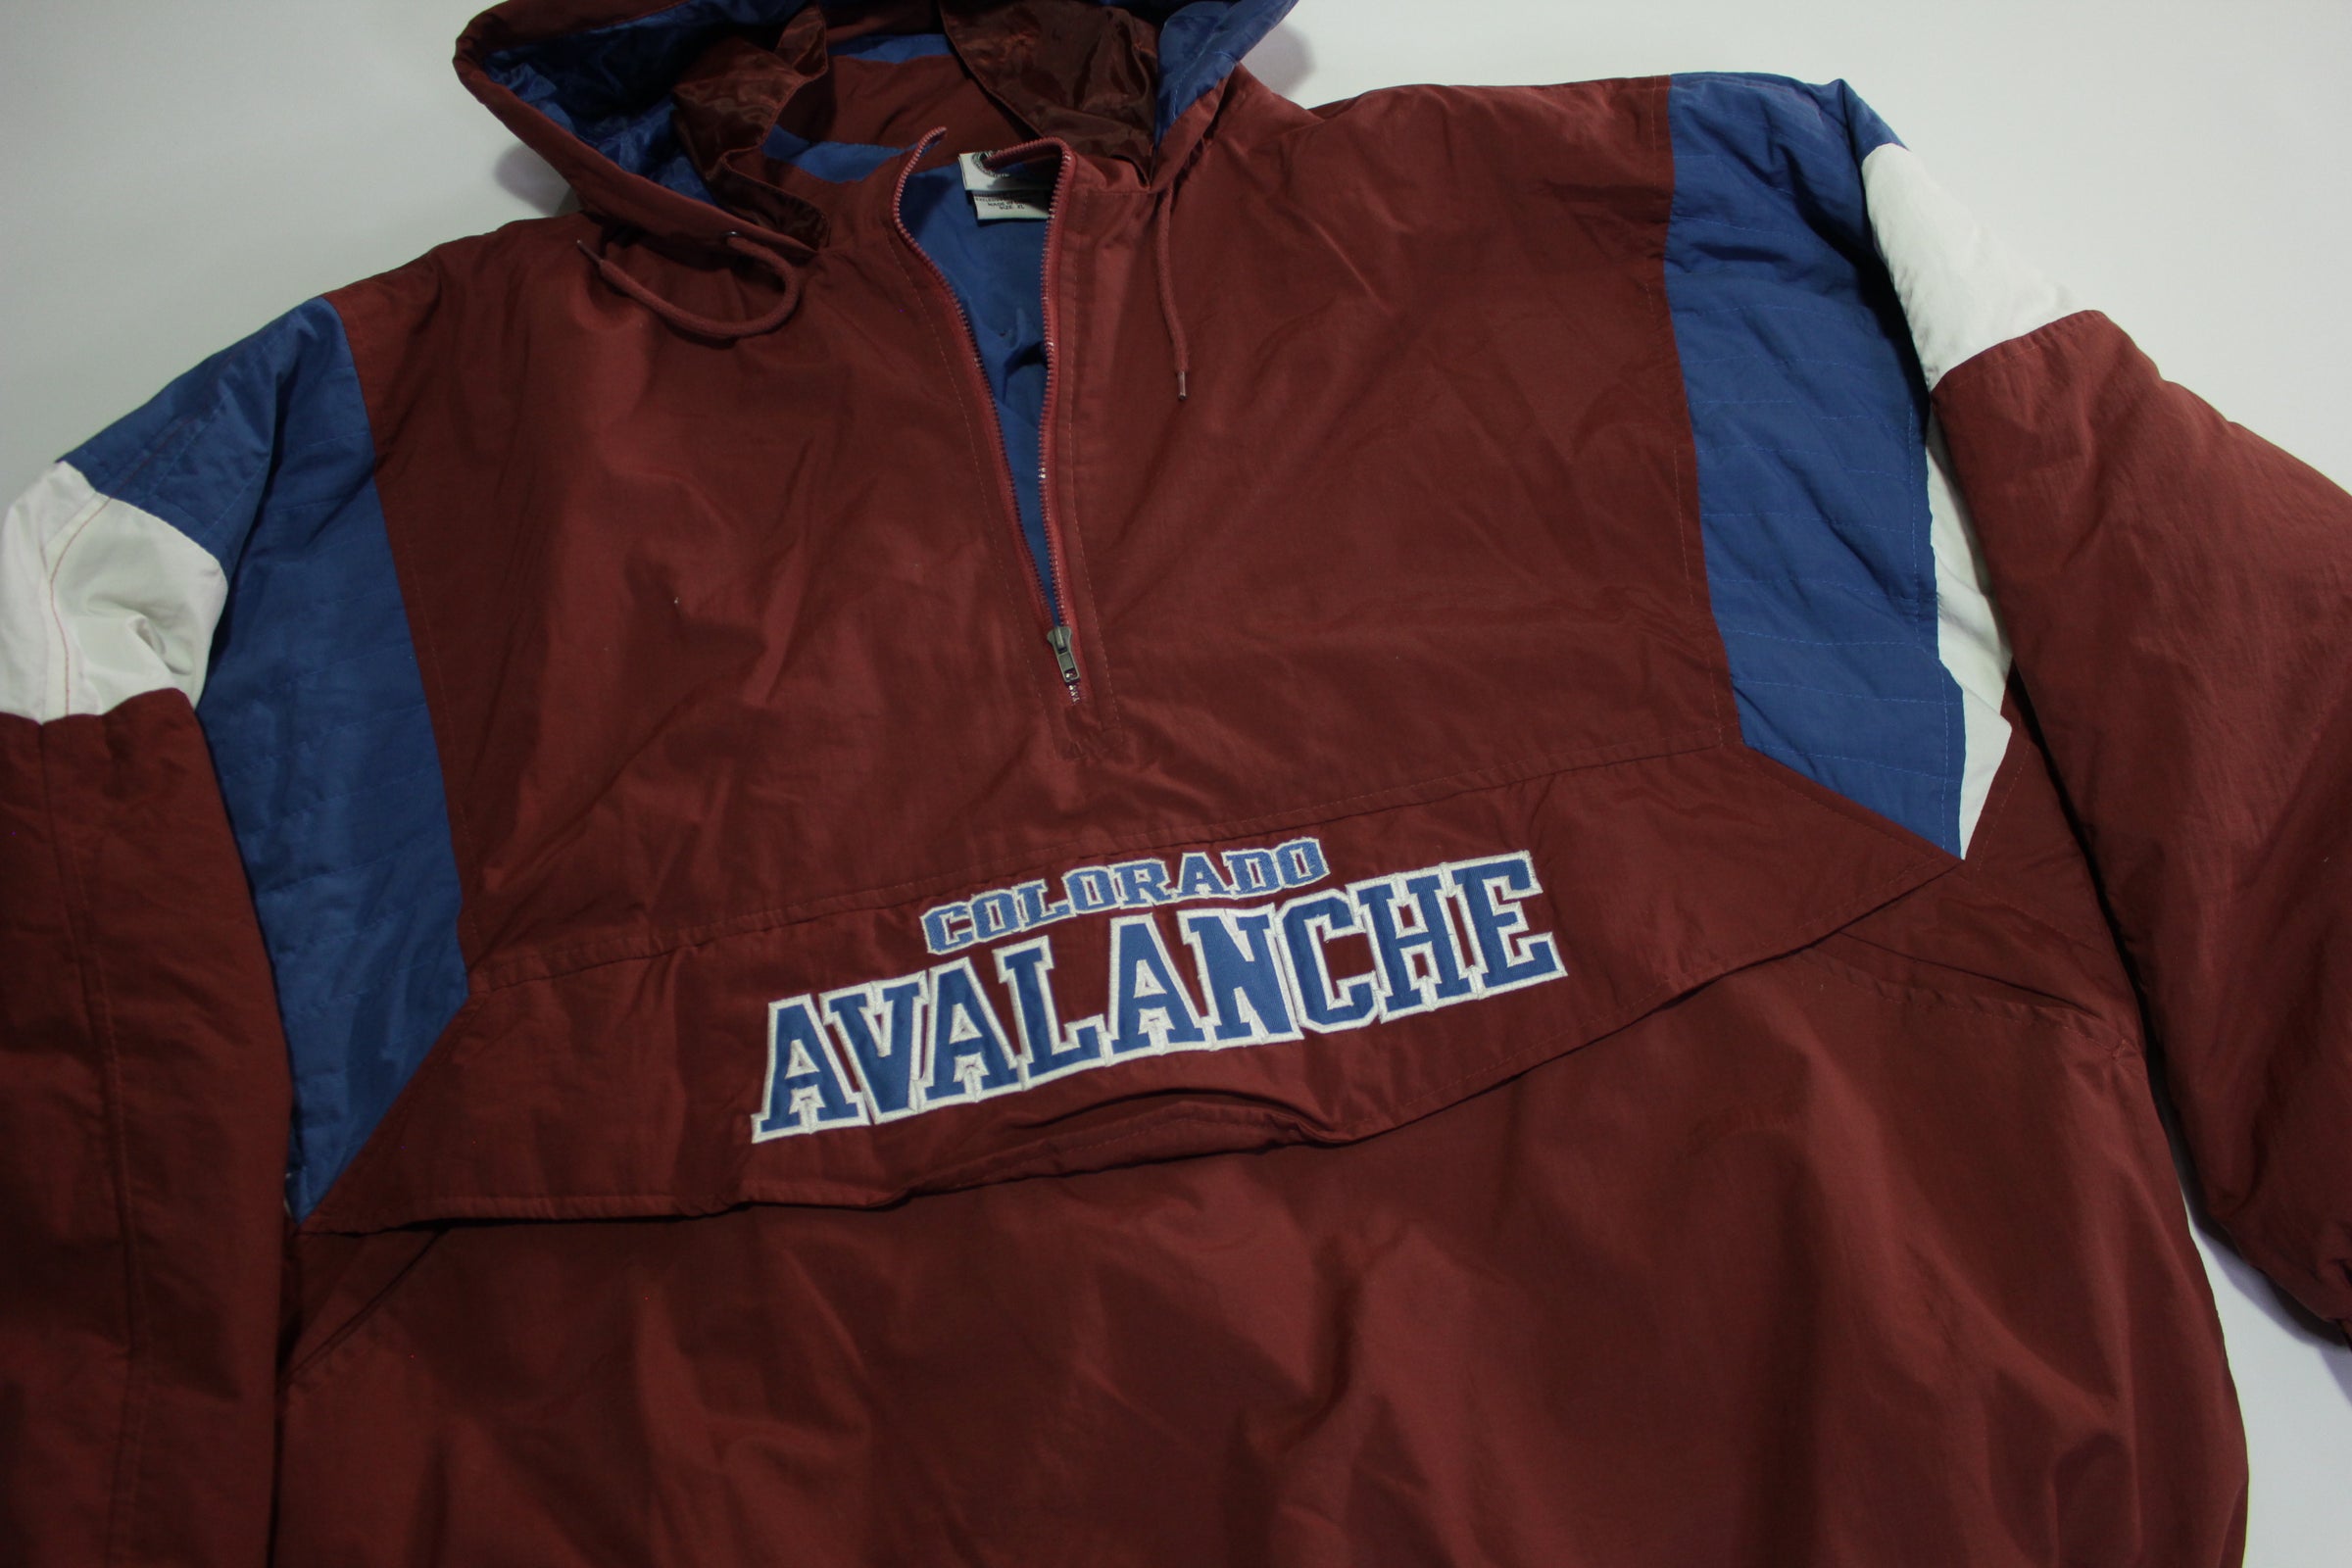 Vintage Style Colorado Avalanche Hockey NHL Crewneck Sweatshirt